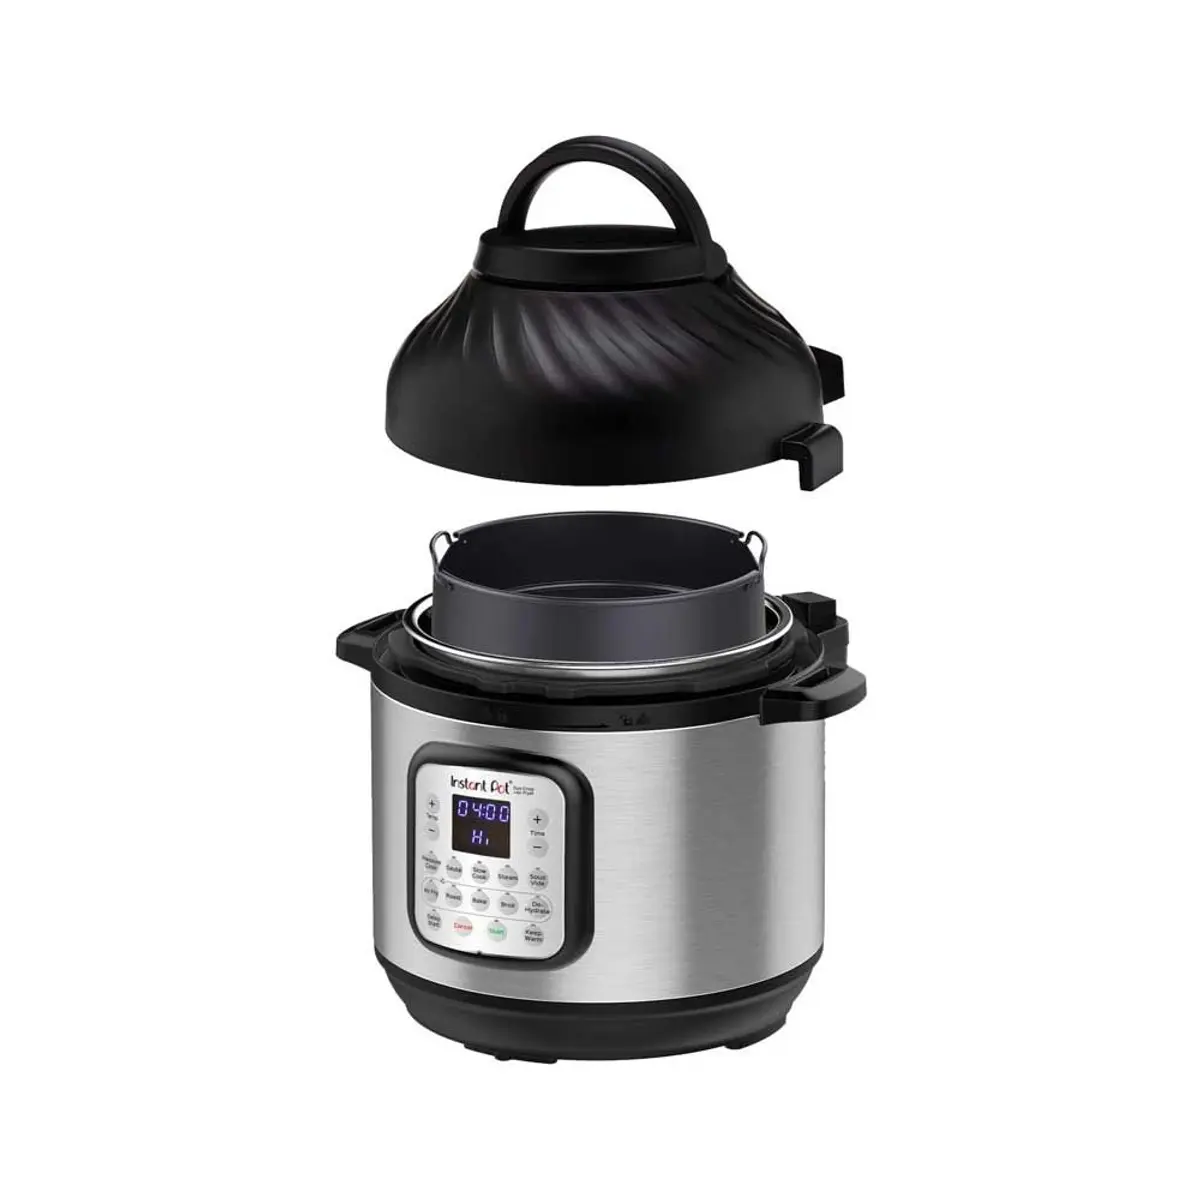 Instant Pot Duo Crisp 11 in 1 Electric Pressure Cooker